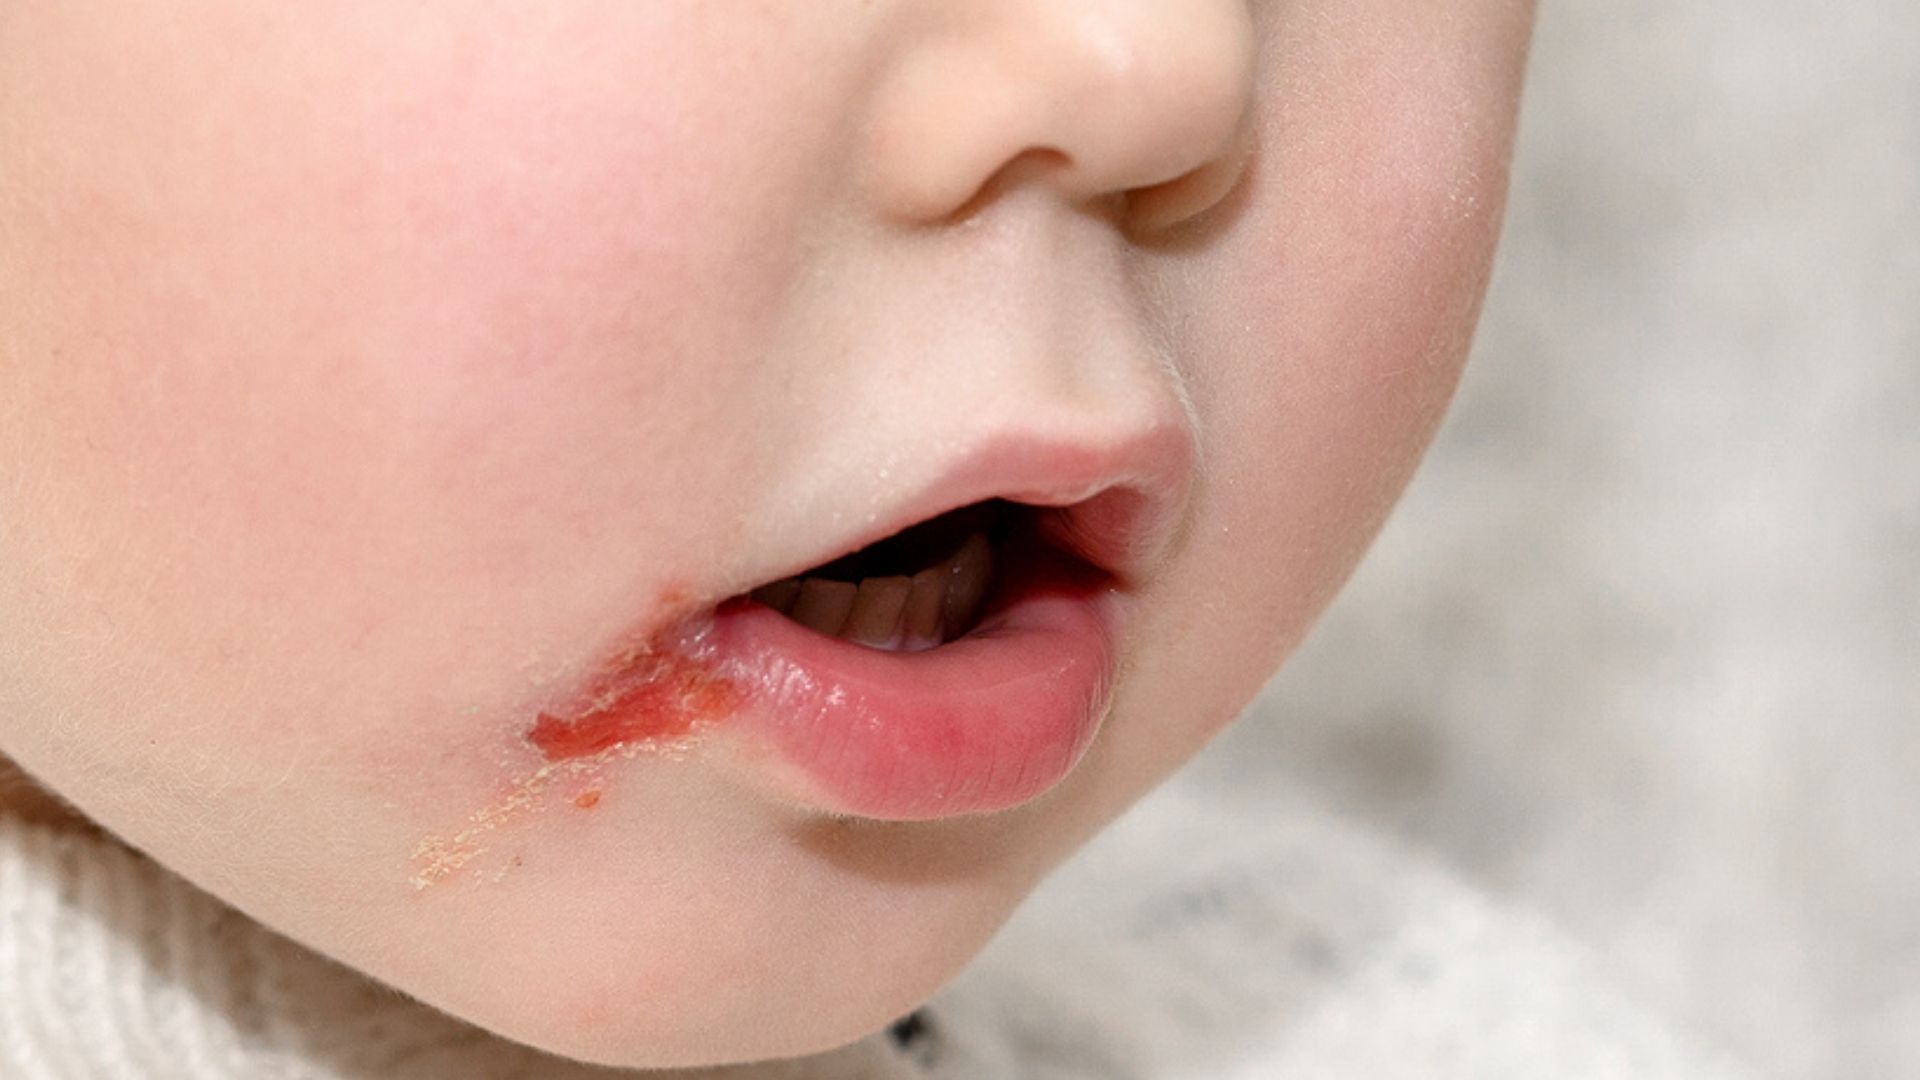 Küssen herpes baby trotz Wie gefährlich